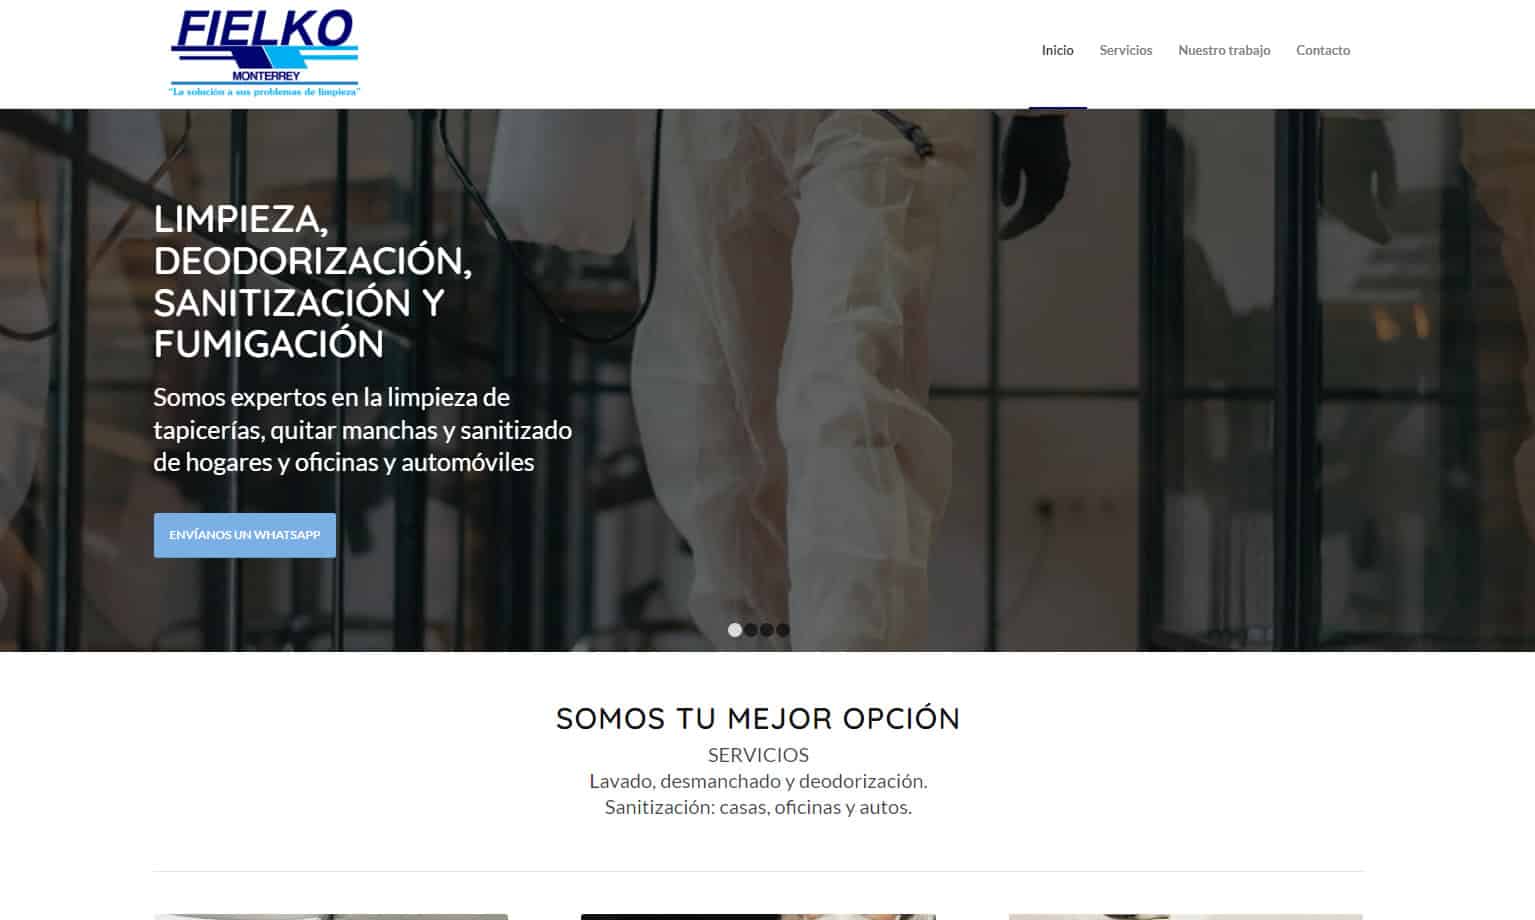 One page, Diseño de página web por Claudia Gutiérrez